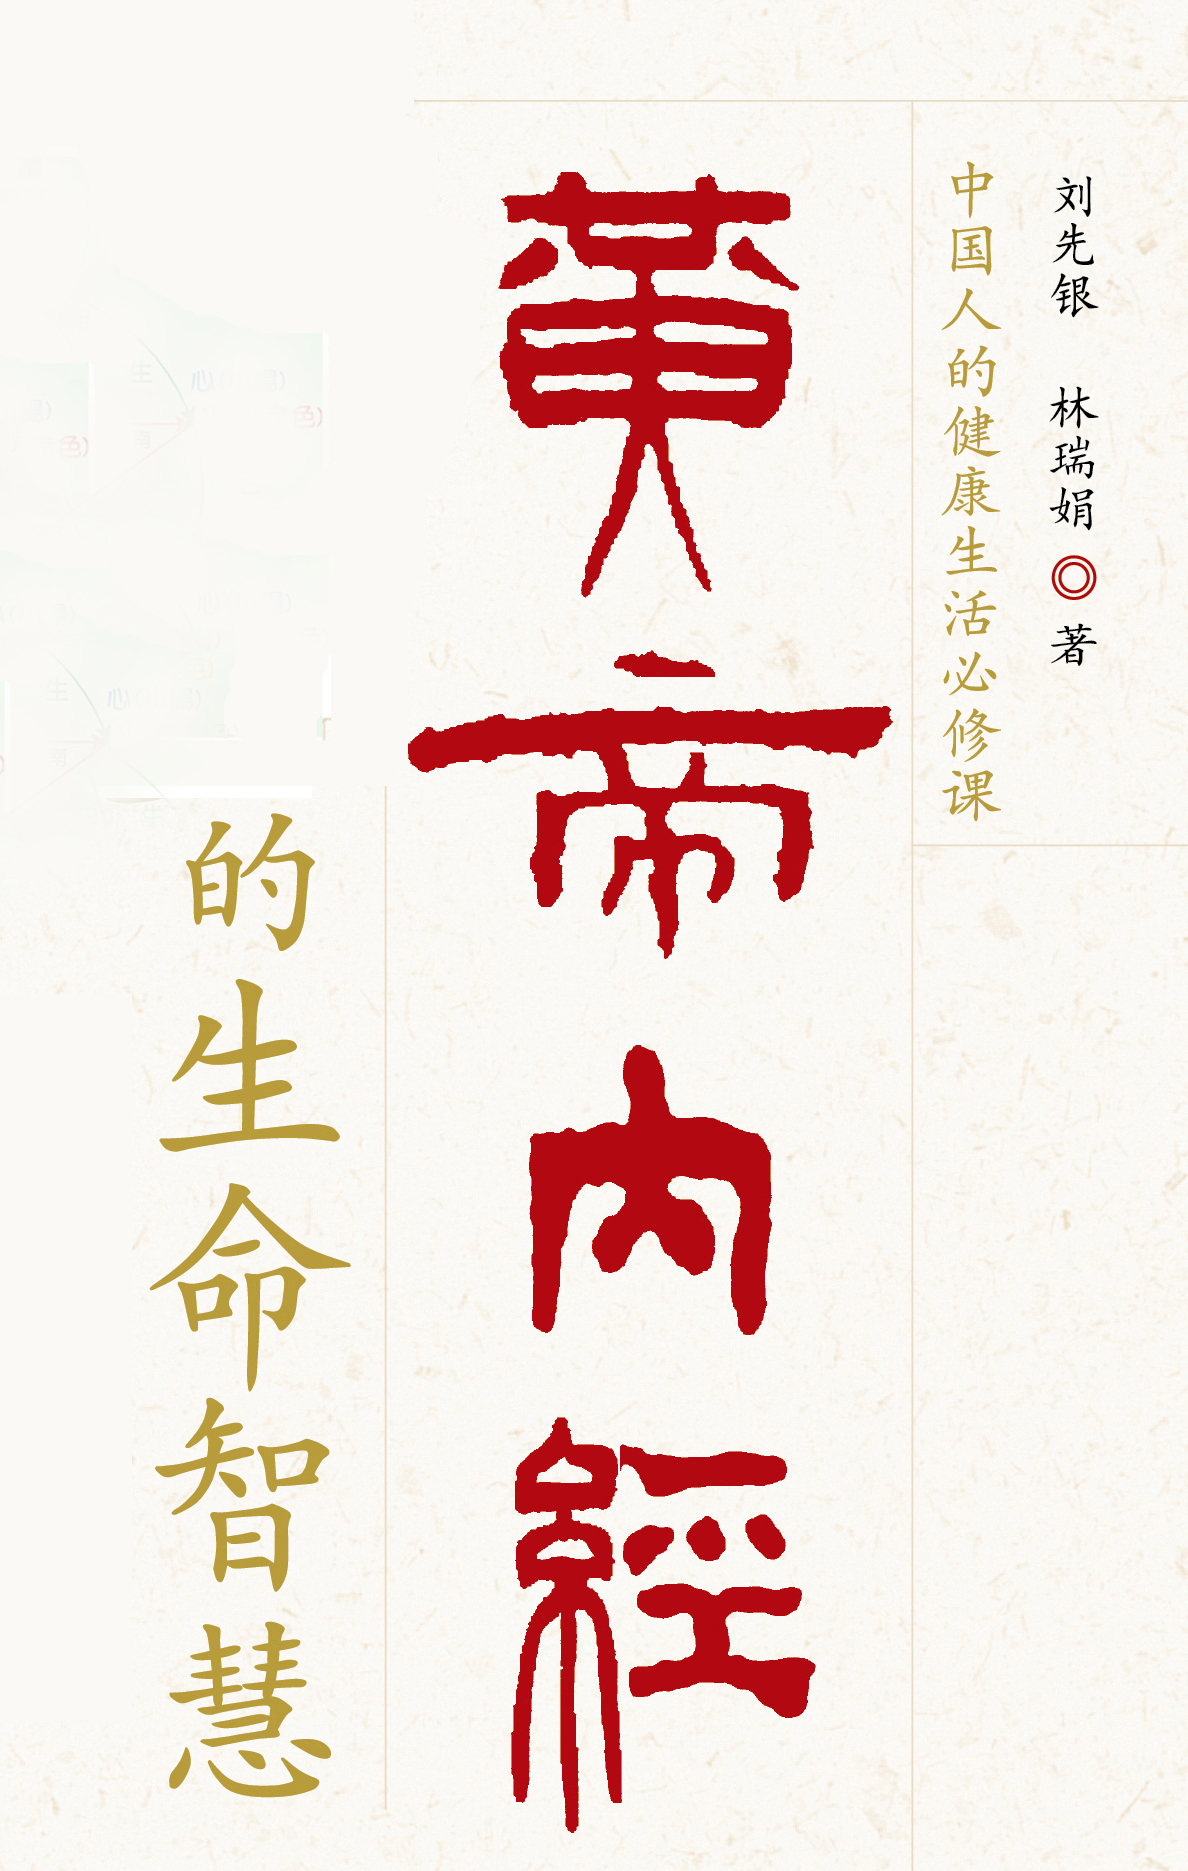 刘先银教授的书法，内涵丰富，不仅讲究书法的典雅清正，而且具有一定的文化意味，体现了作者对汉文字的美化和风格化，透射出儒雅的风韵。